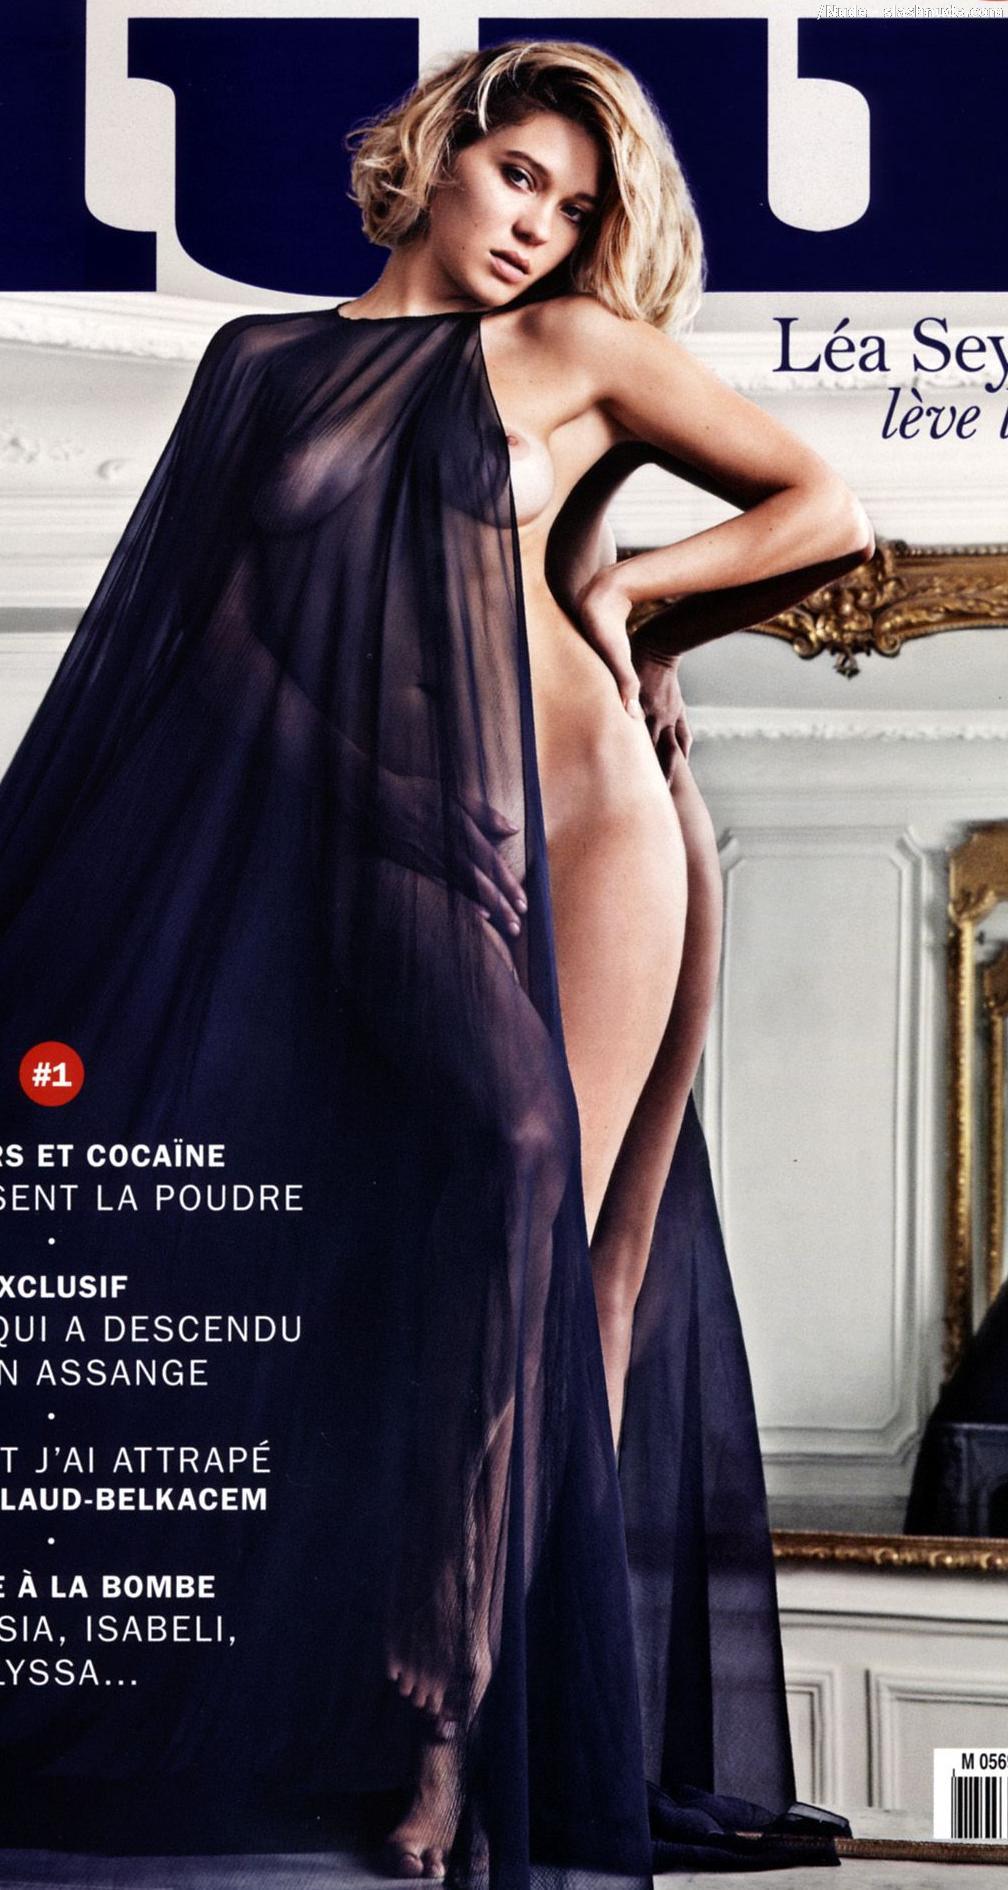 Lea Seydoux Nude Top To Bottom In Lui Magazine 1